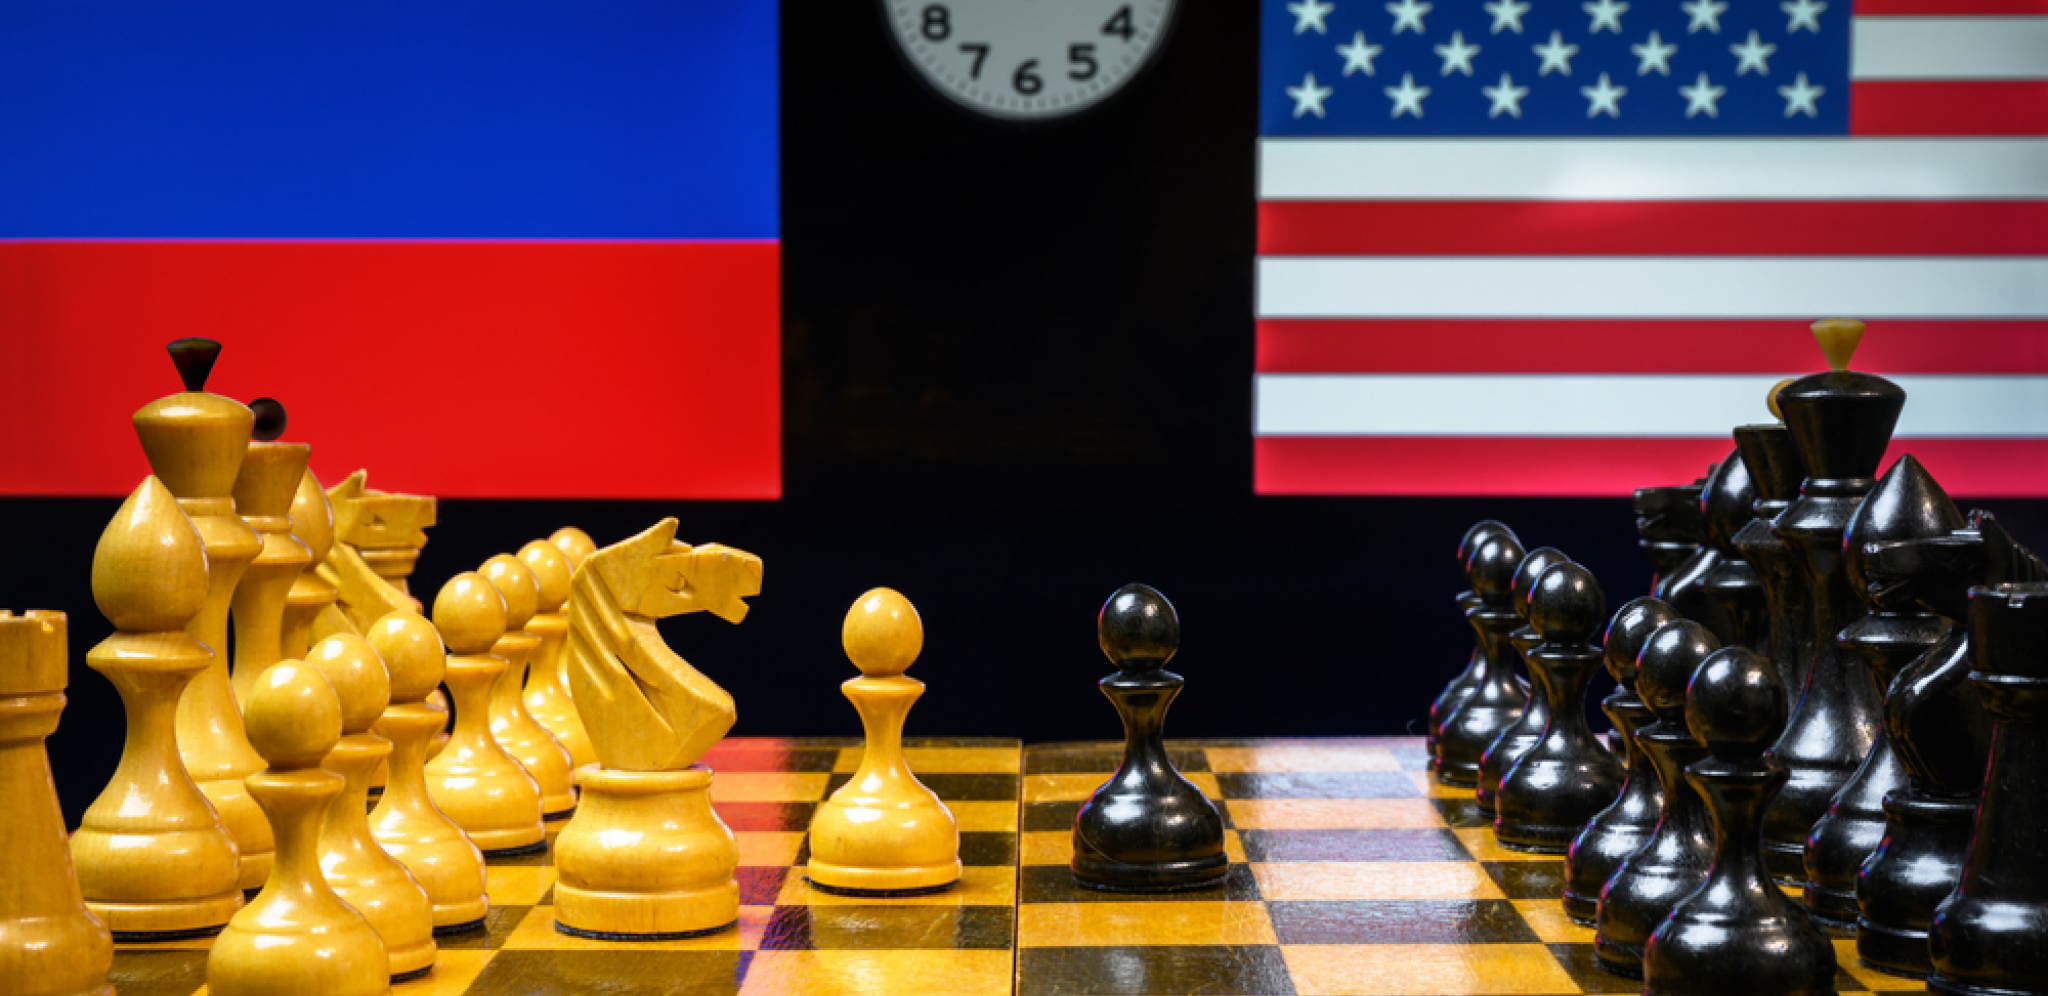 DA LI JE REŠENJE NA POMOLU? SAD i Rusija danas počinju pregovore o situaciji u Ukrajini